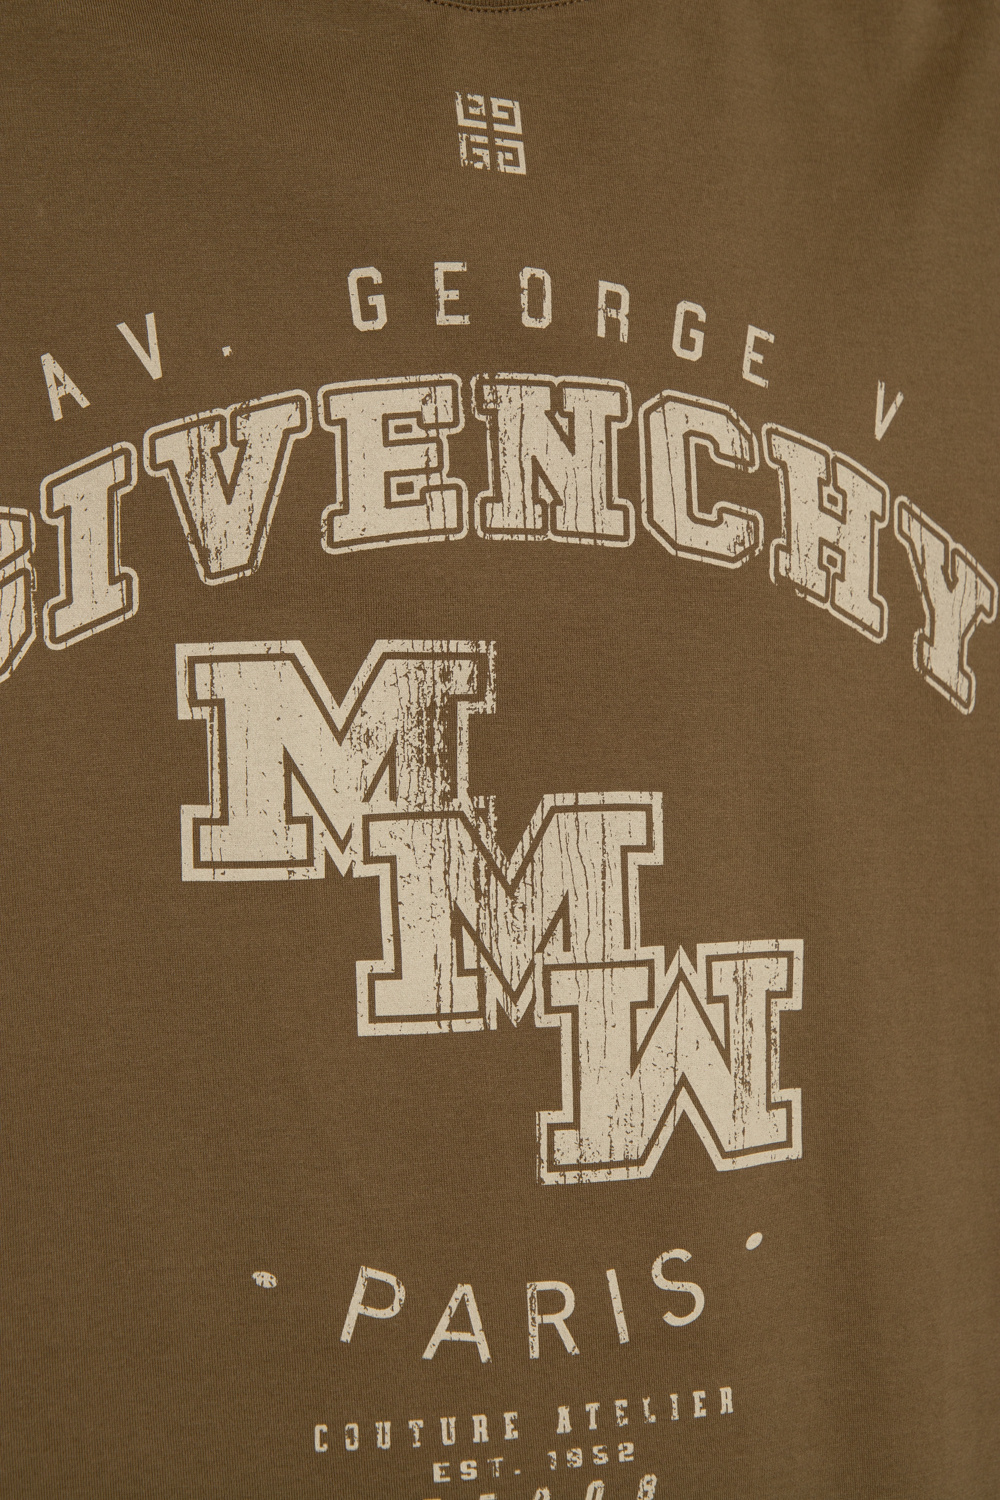 Givenchy macheed T-shirt